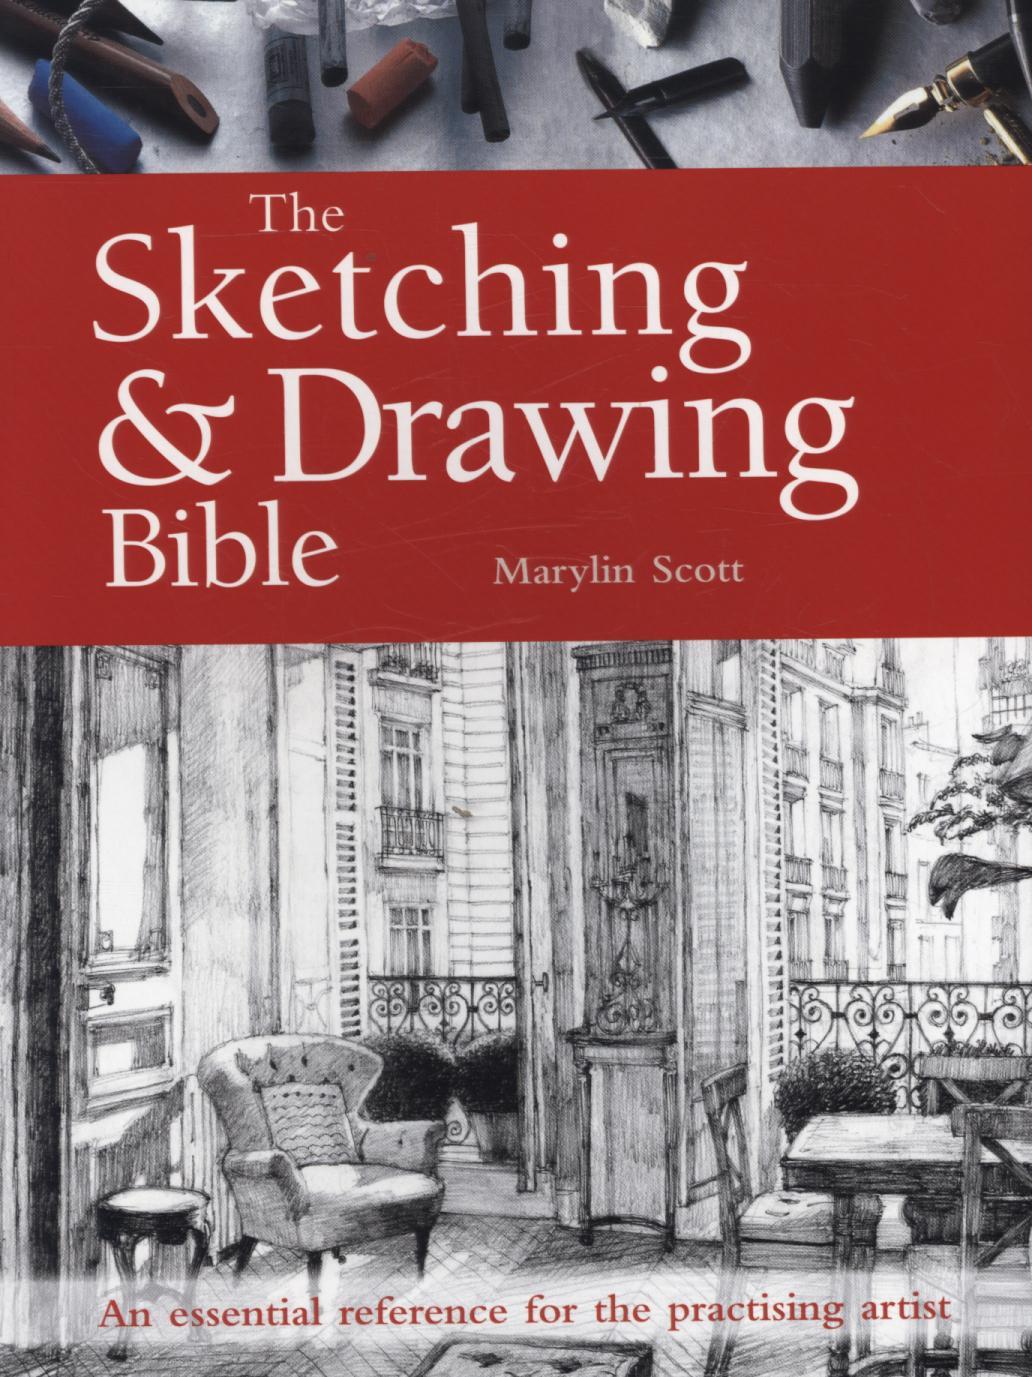 Sketching & Drawing Bible